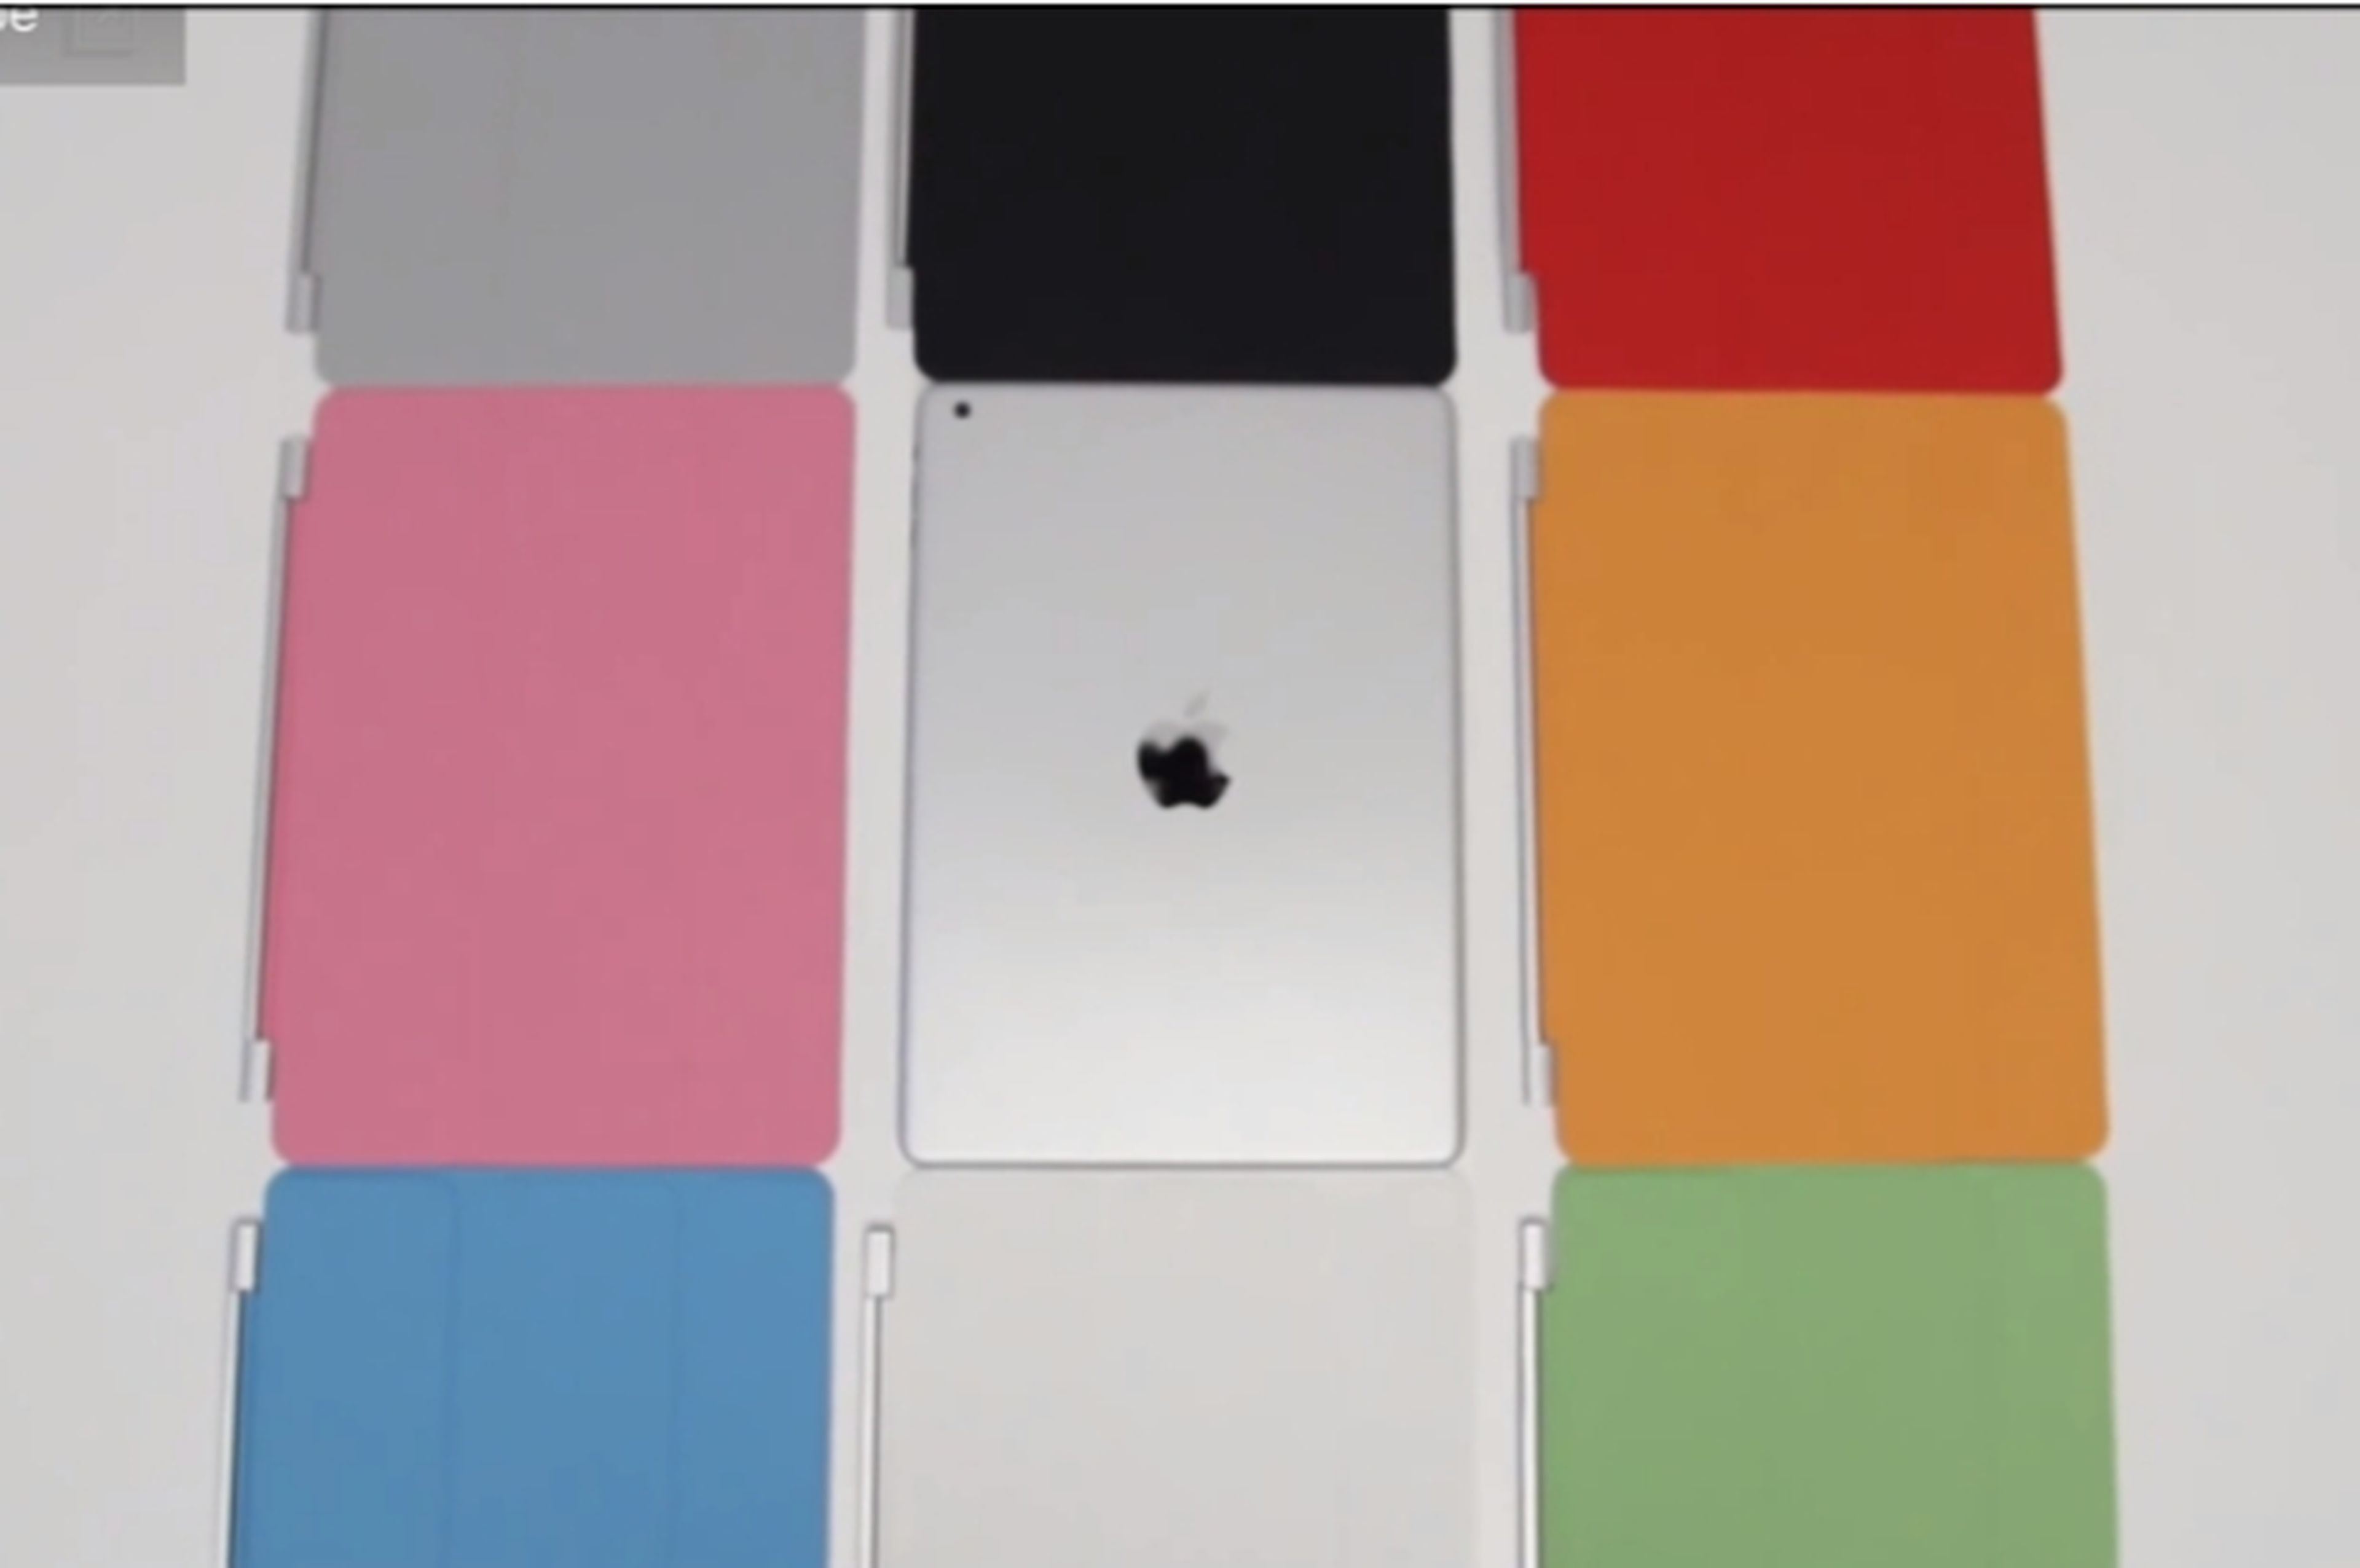 Vídeo con las supuestas nuevas Smart Cover para el iPad 5